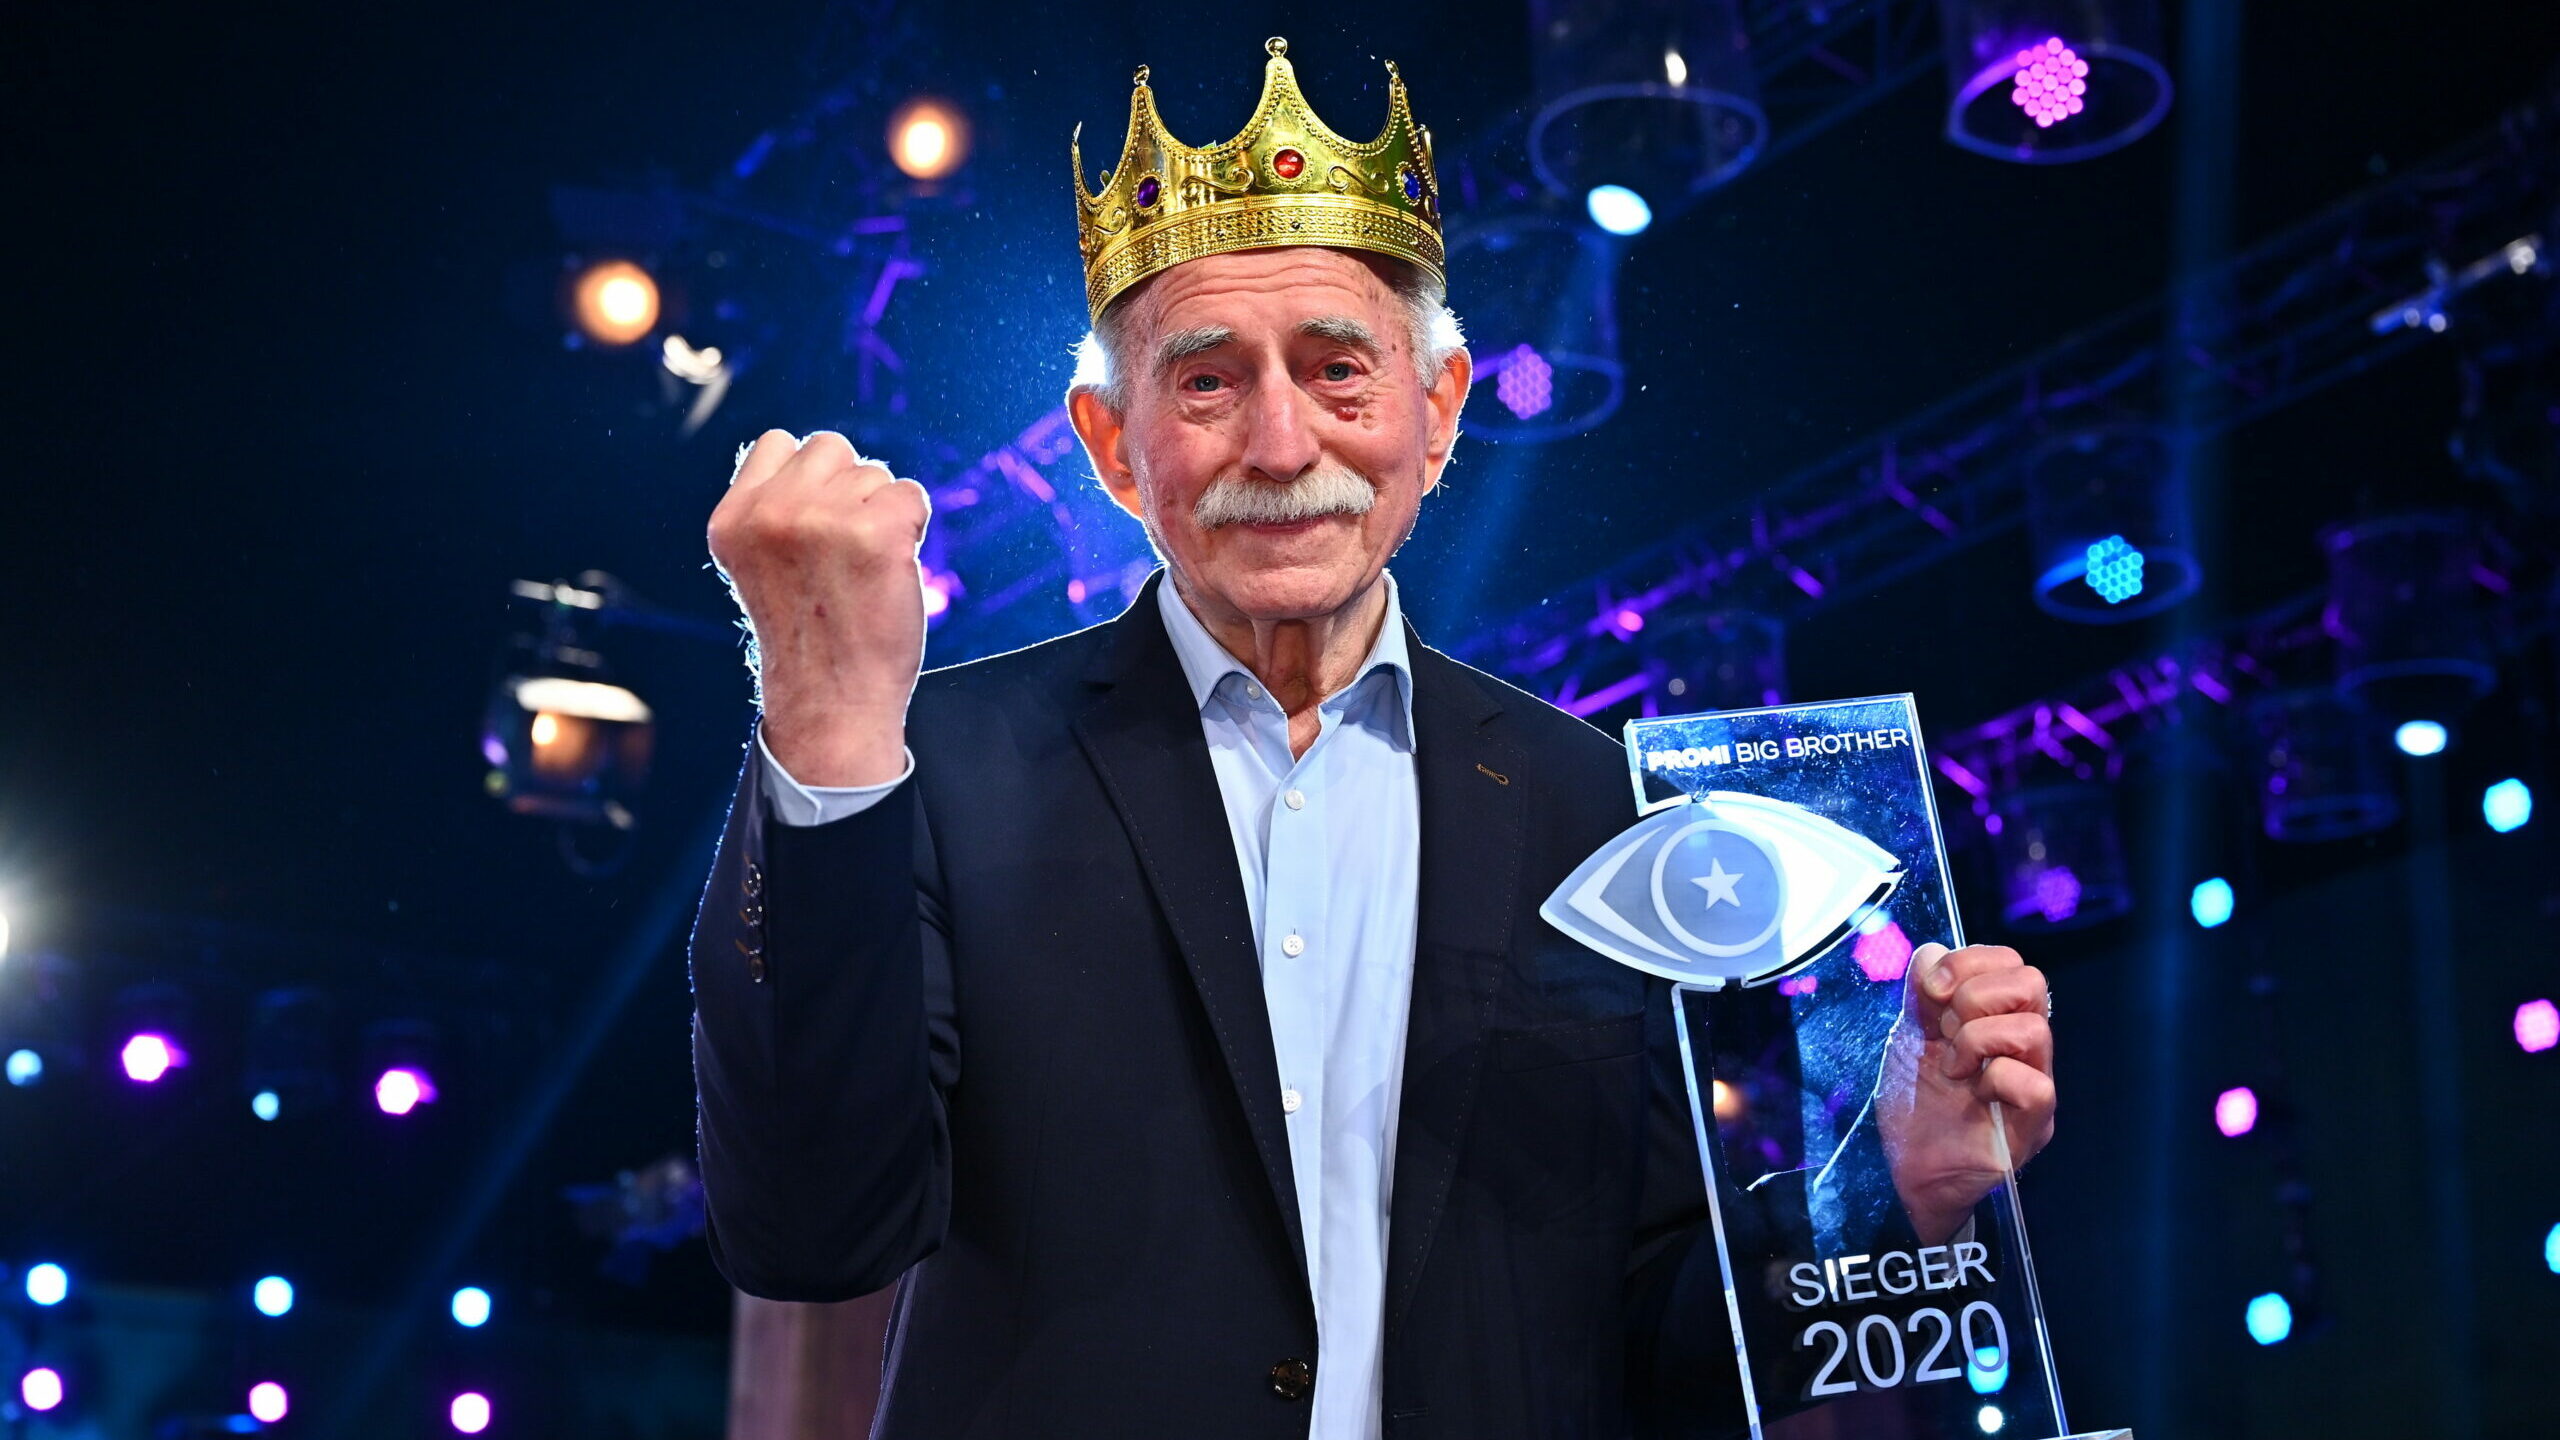 Promi Big Brother 2020 Gewinner: Werner Hansch ist der Sieger von Staffel 8 7